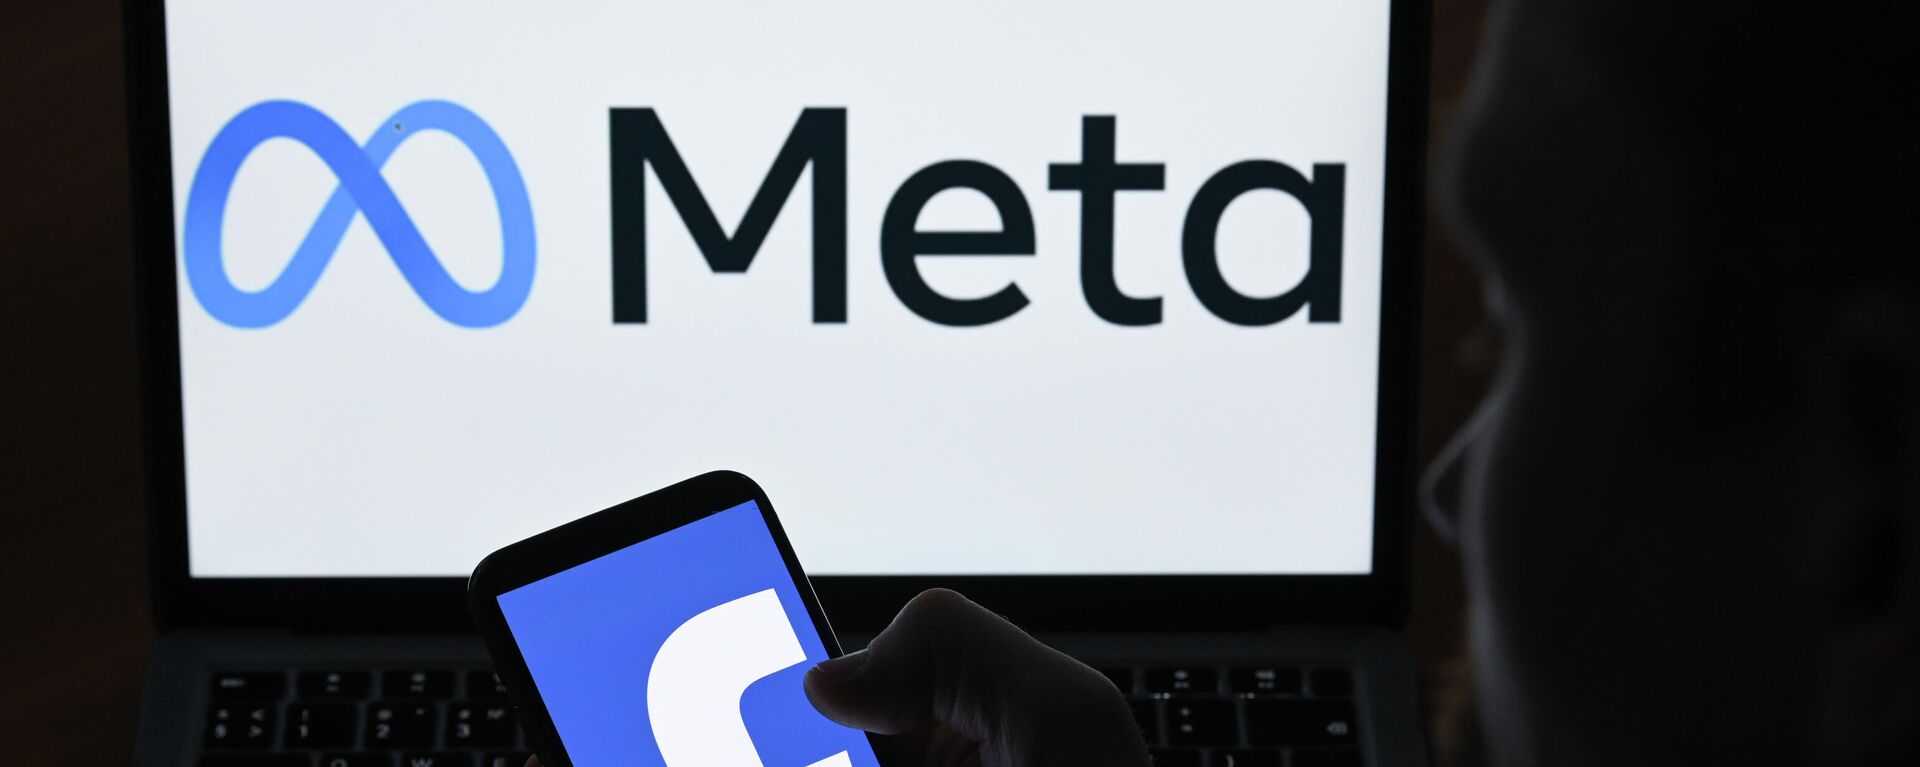 Логотипы компании Facebook и Meta на экранах смартфона и монитора - Sputnik Латвия, 1920, 28.02.2022